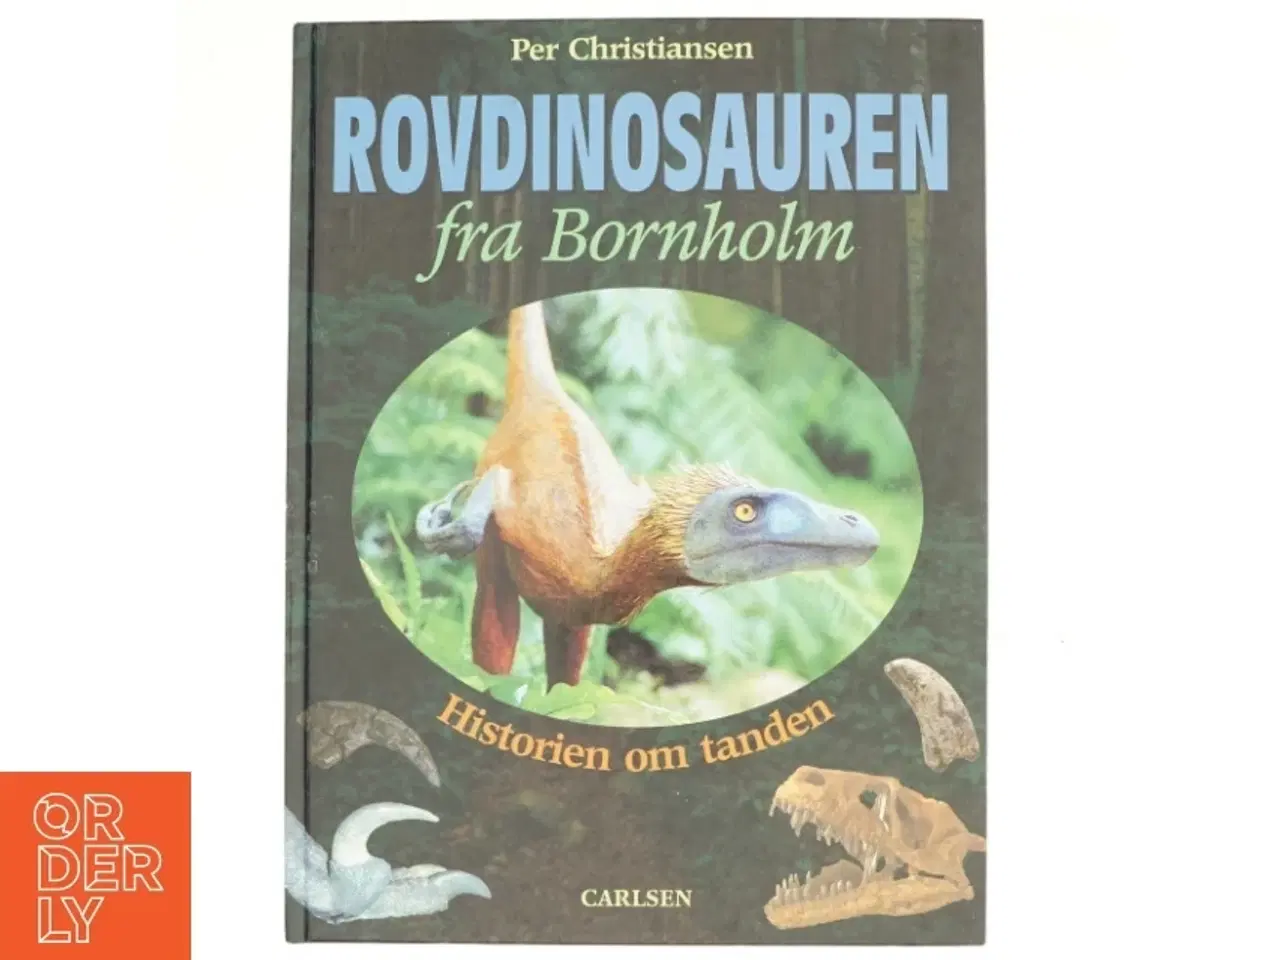 Billede 1 - Rovdinosauren fra Bornholm : historien om tanden af Per Christiansen (f. 1968-12-16) (Bog)